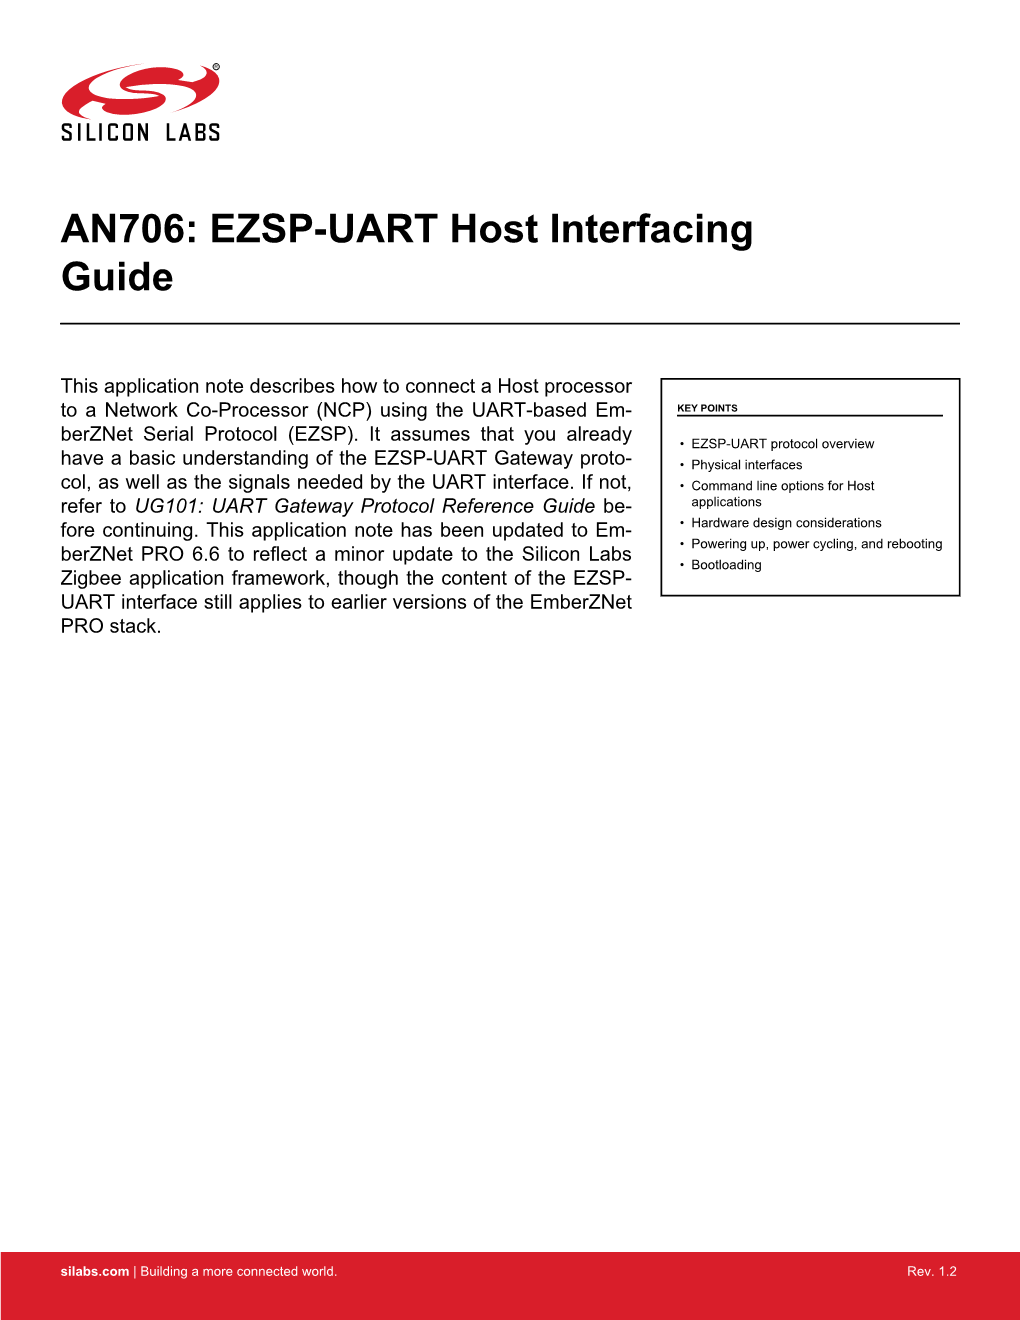 AN706: EZSP-UART Host Interfacing Guide